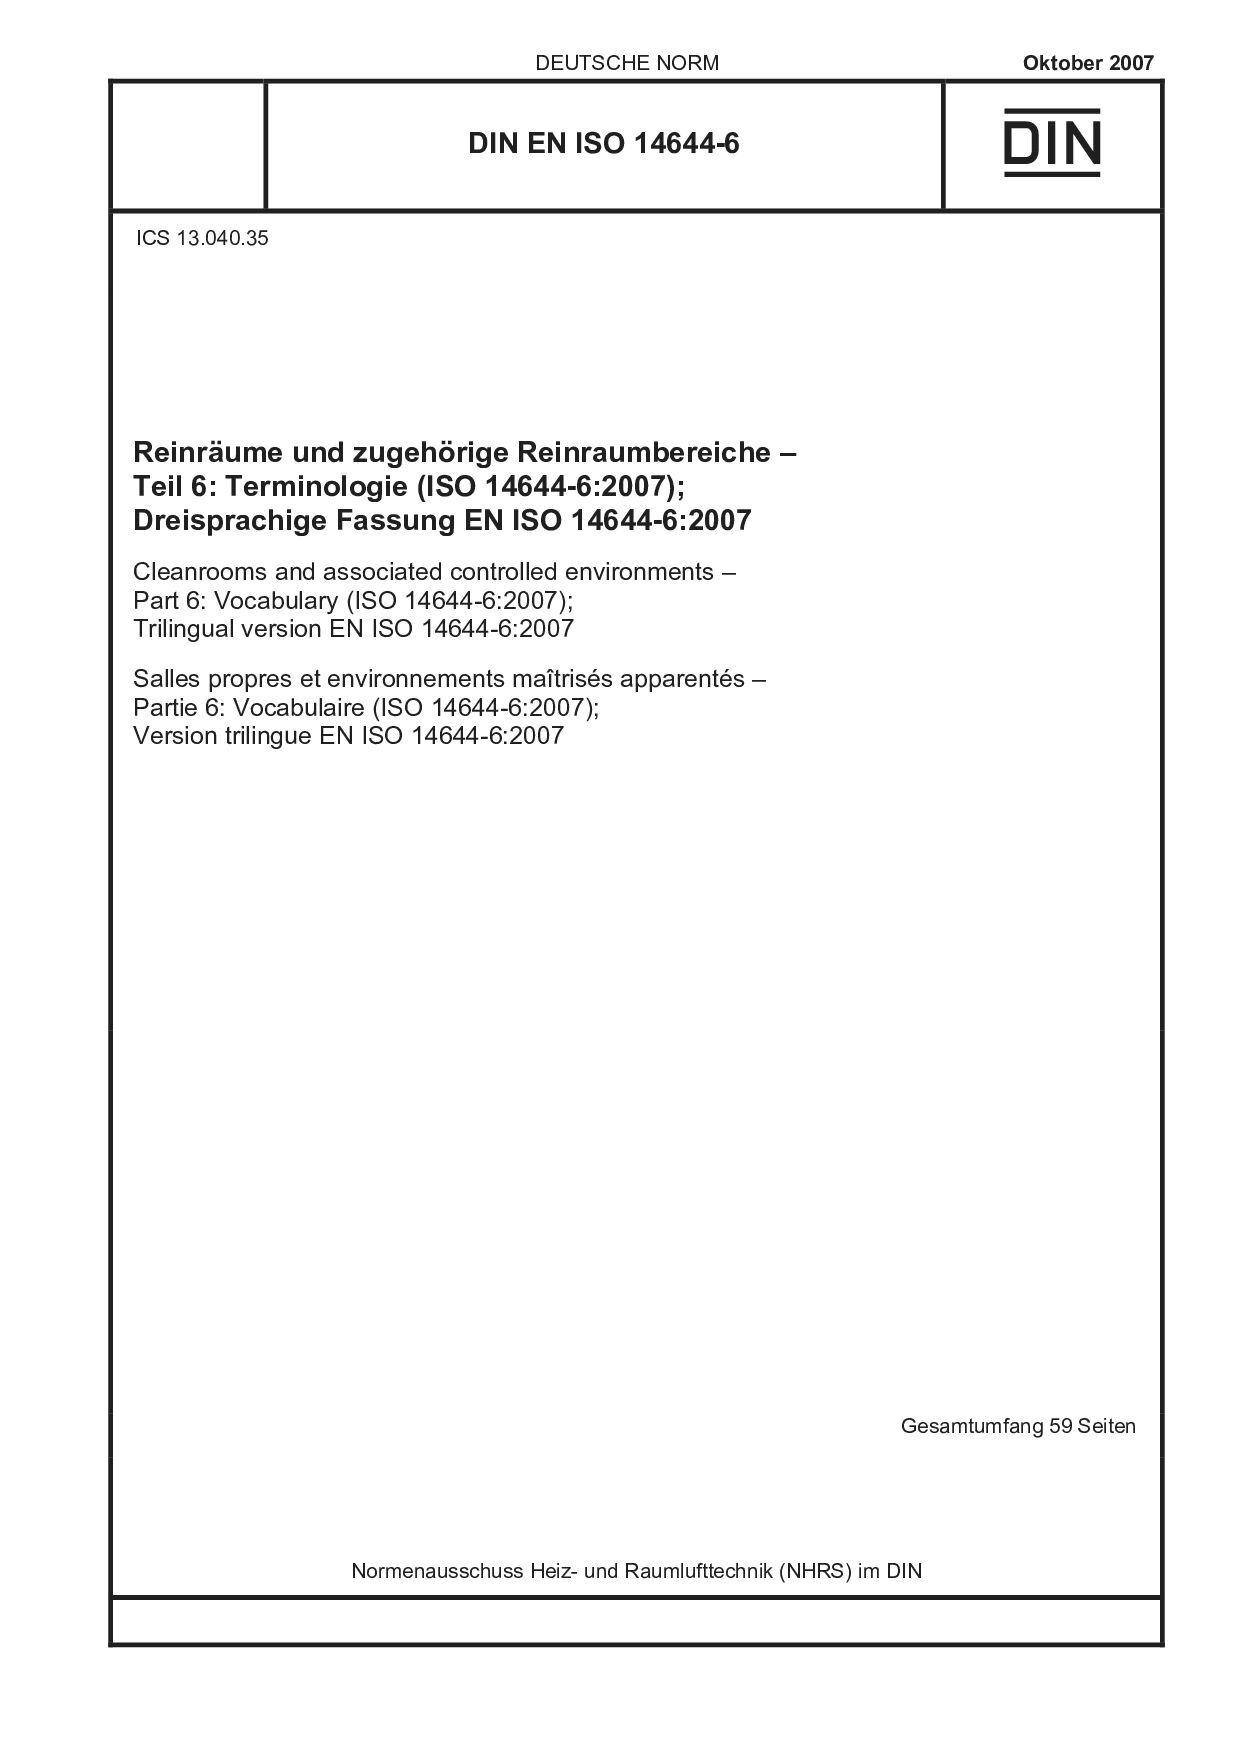 DIN EN ISO 14644-6:2007封面图